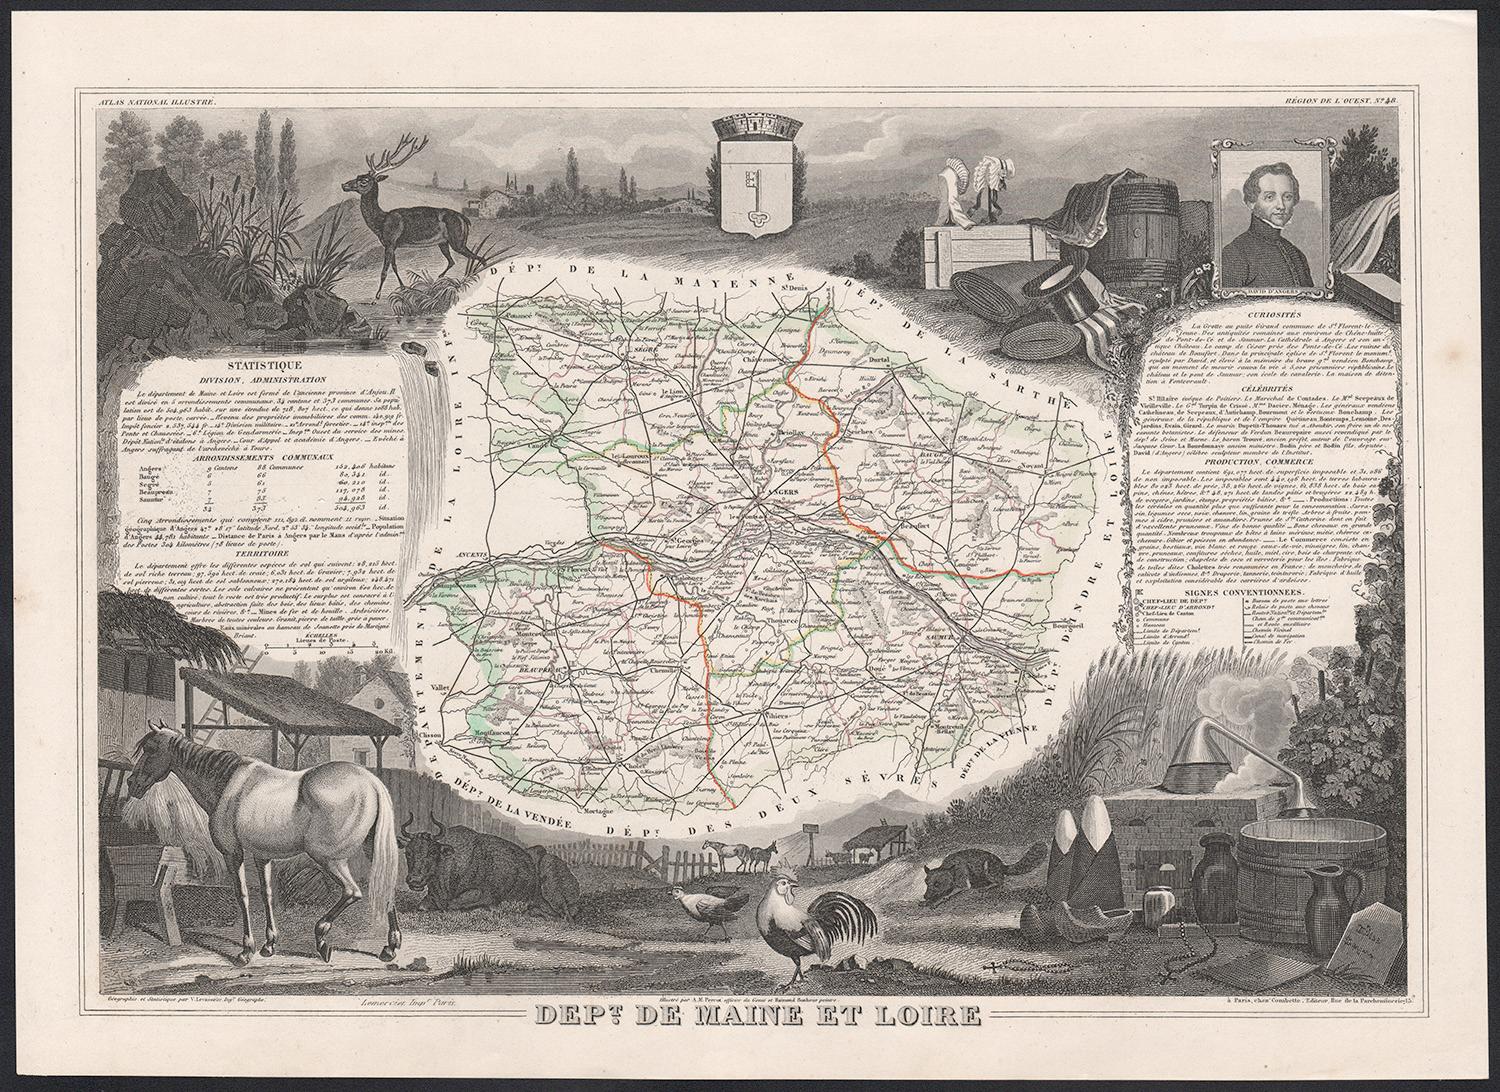 Victor Levasseur Landscape Print - Maine et Loire, France. Antique map of French department, 1856